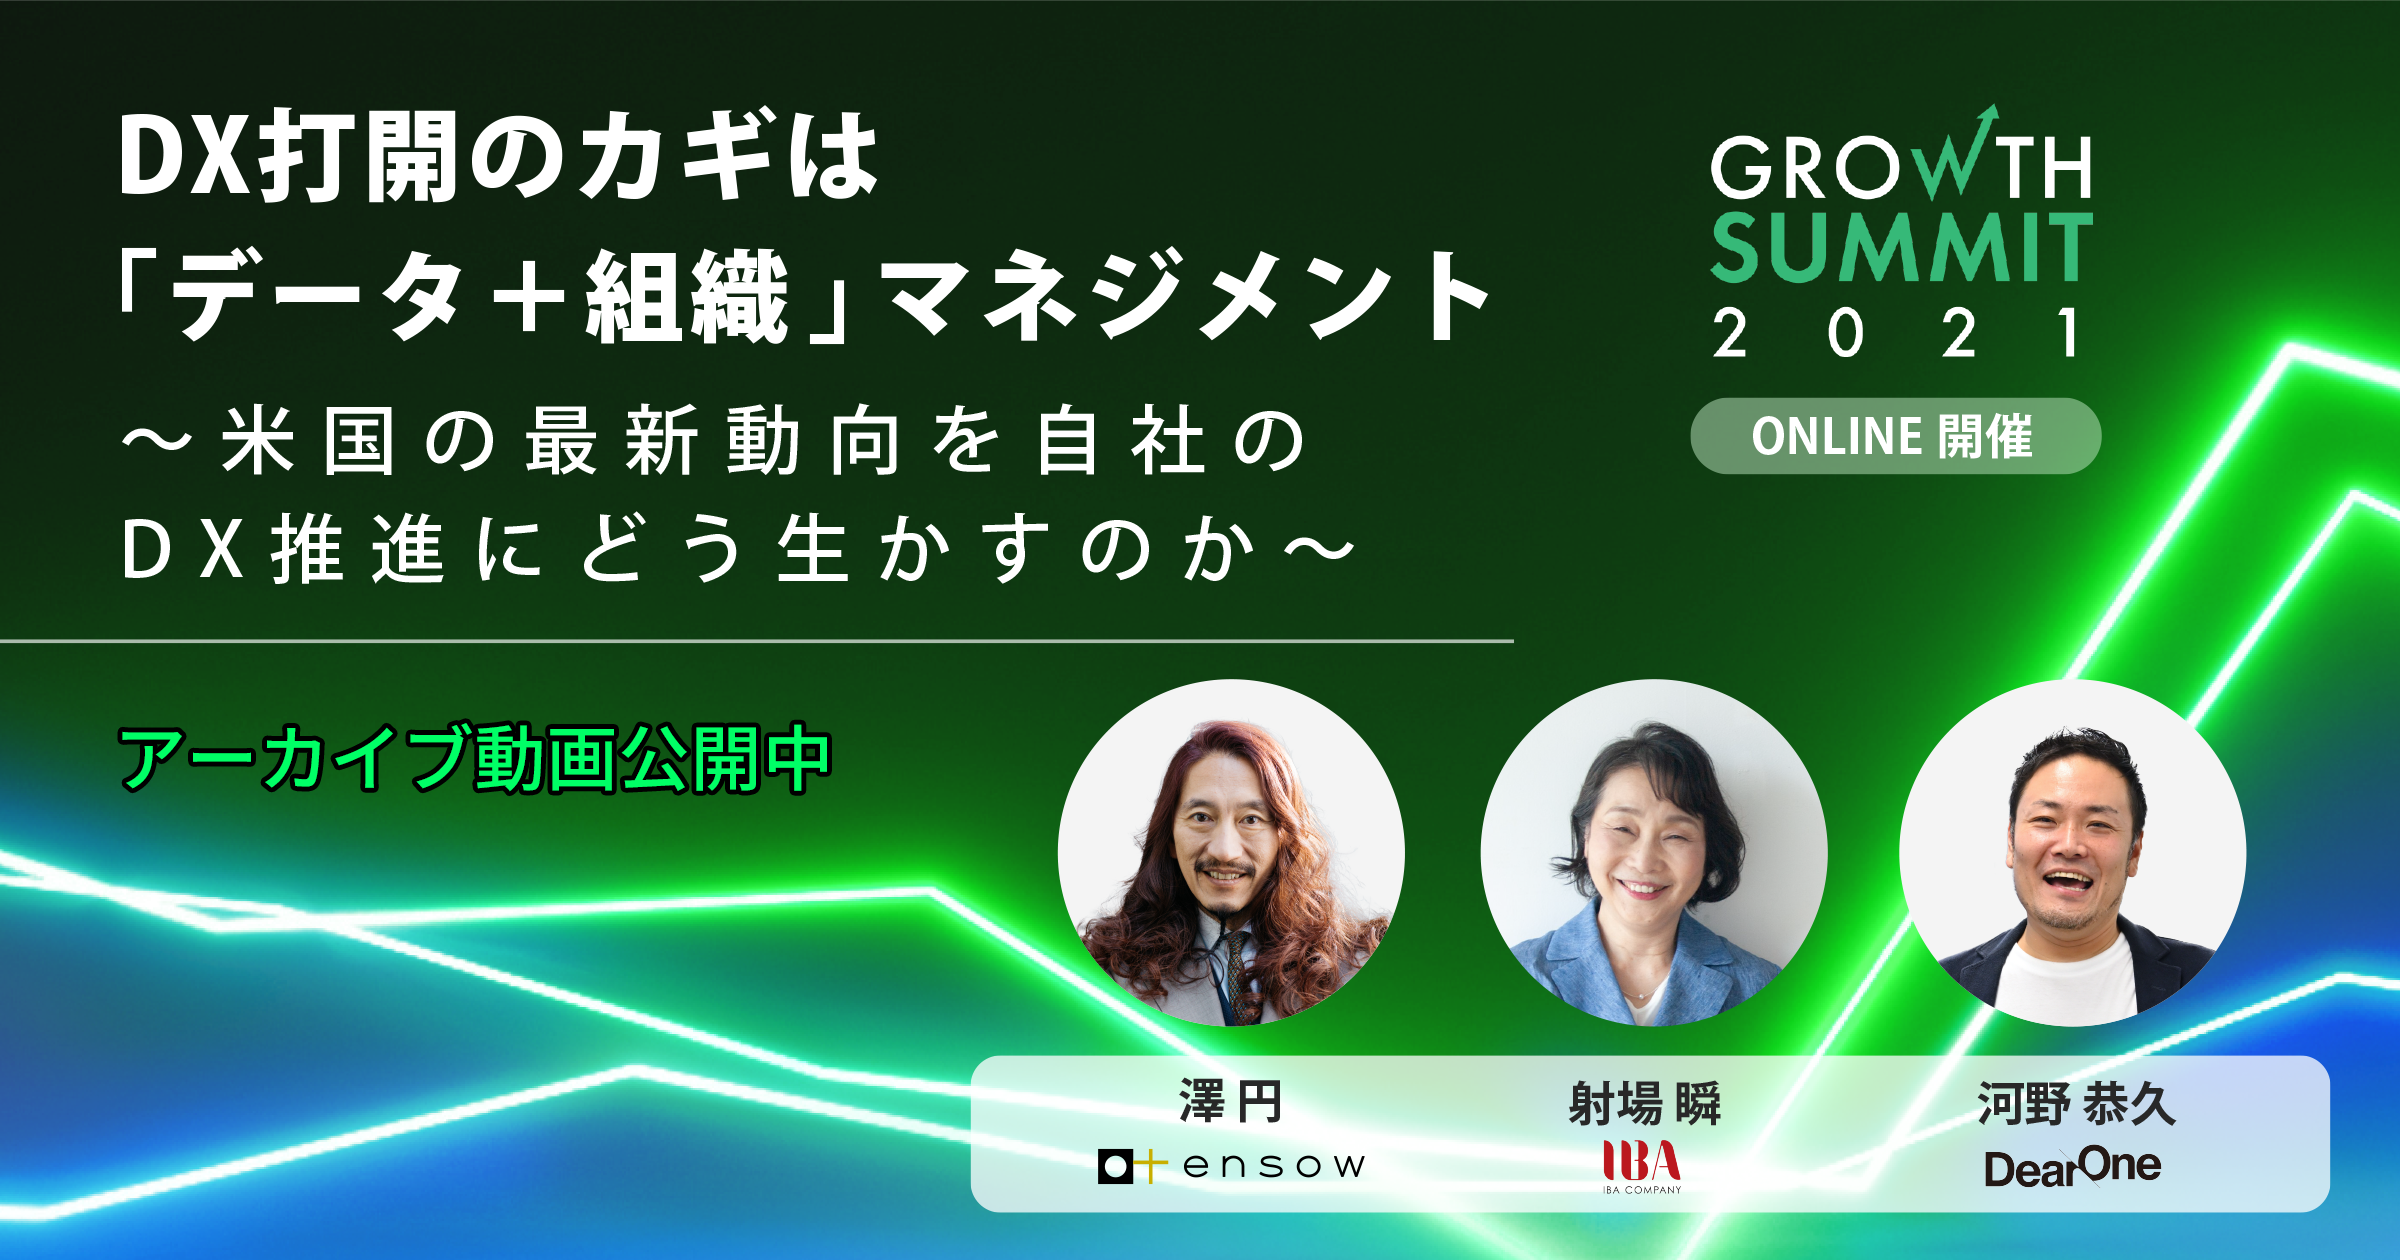 【ウェビナーレポート】Growth Summit 2021